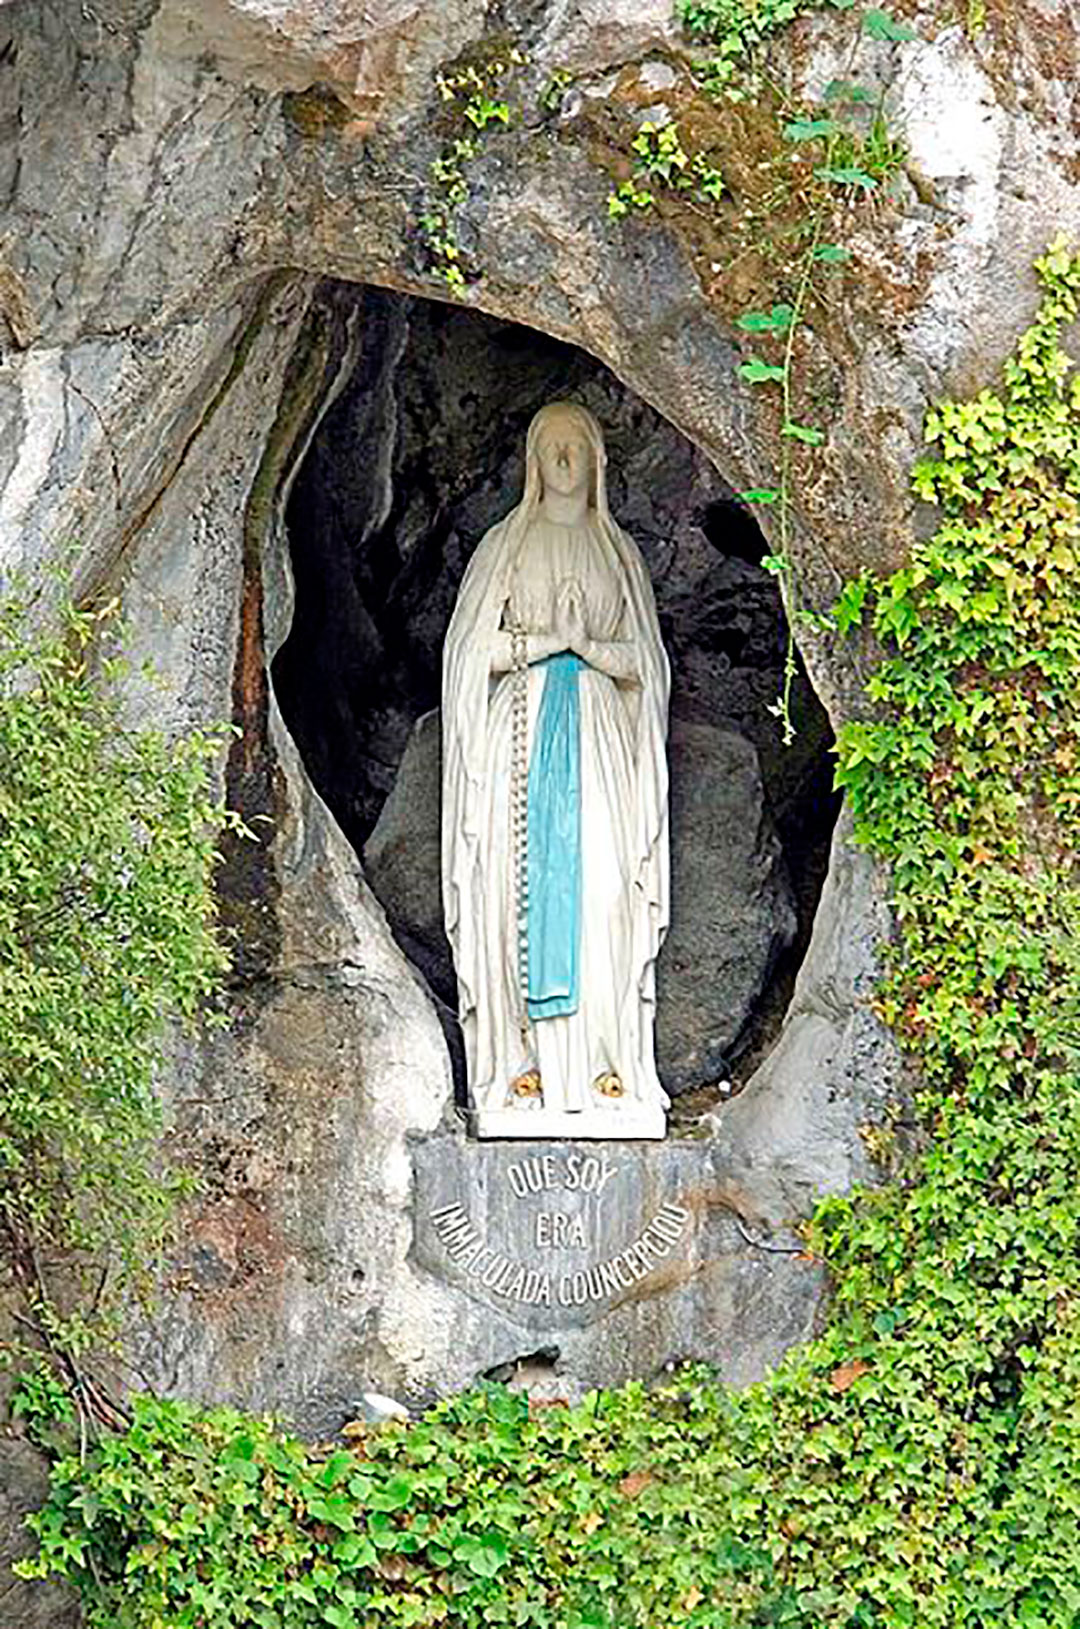 Escultura original de Nuestra Sra. de Lourdes realizada por el escultor Joseph Hughes expuesta en la gruta de Masabaille, Lourdes, Francia